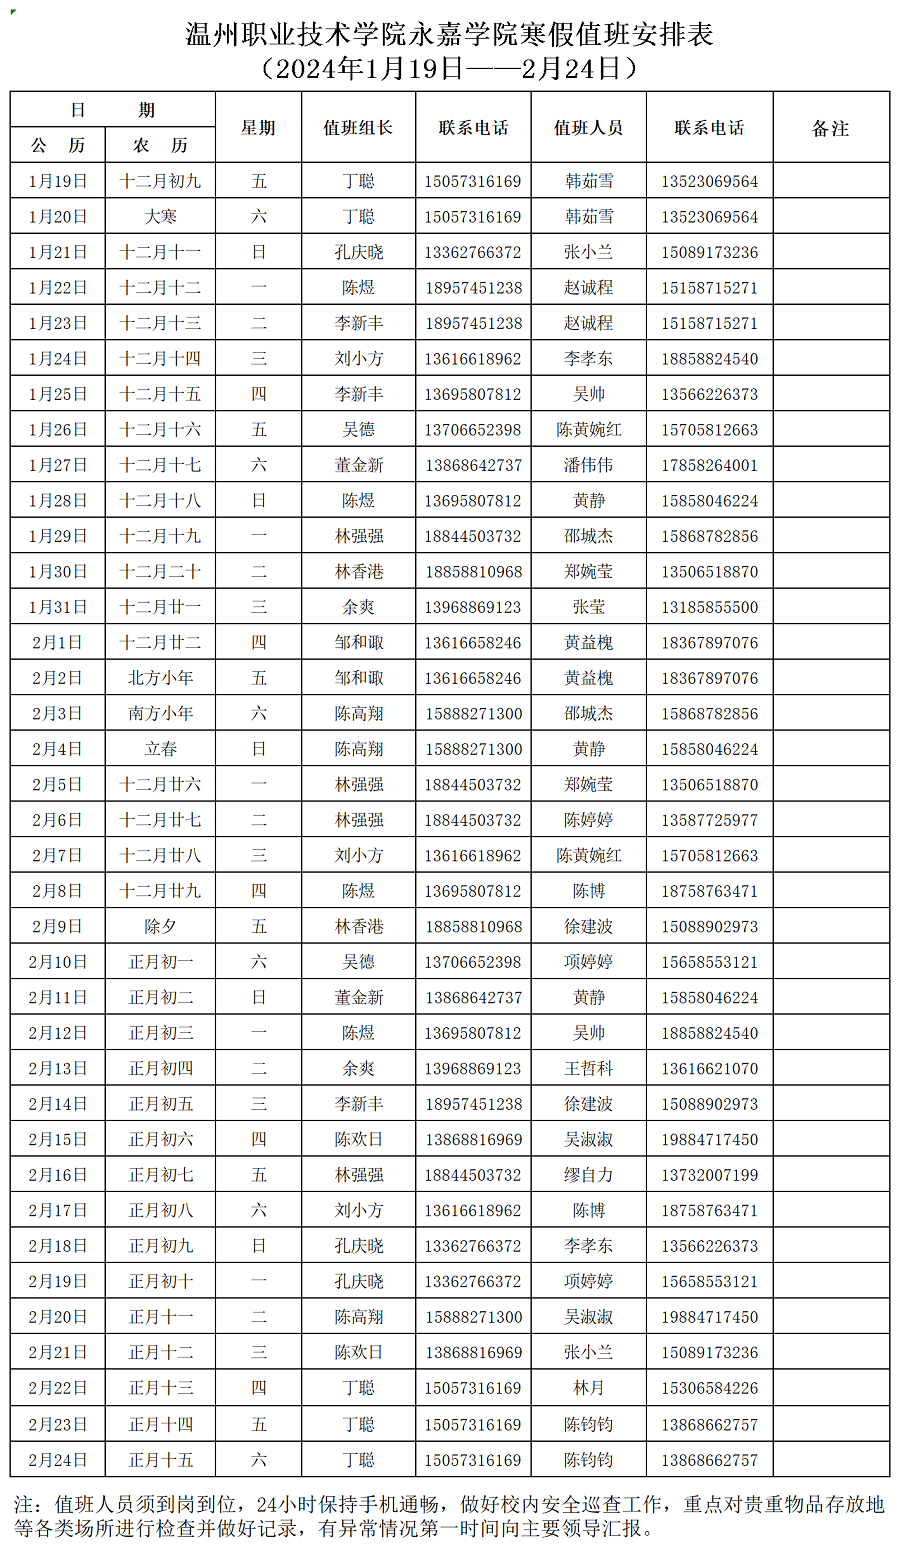 永嘉学院寒假值班表（2024年1月19日-2月24日）_Sheet4(1).png